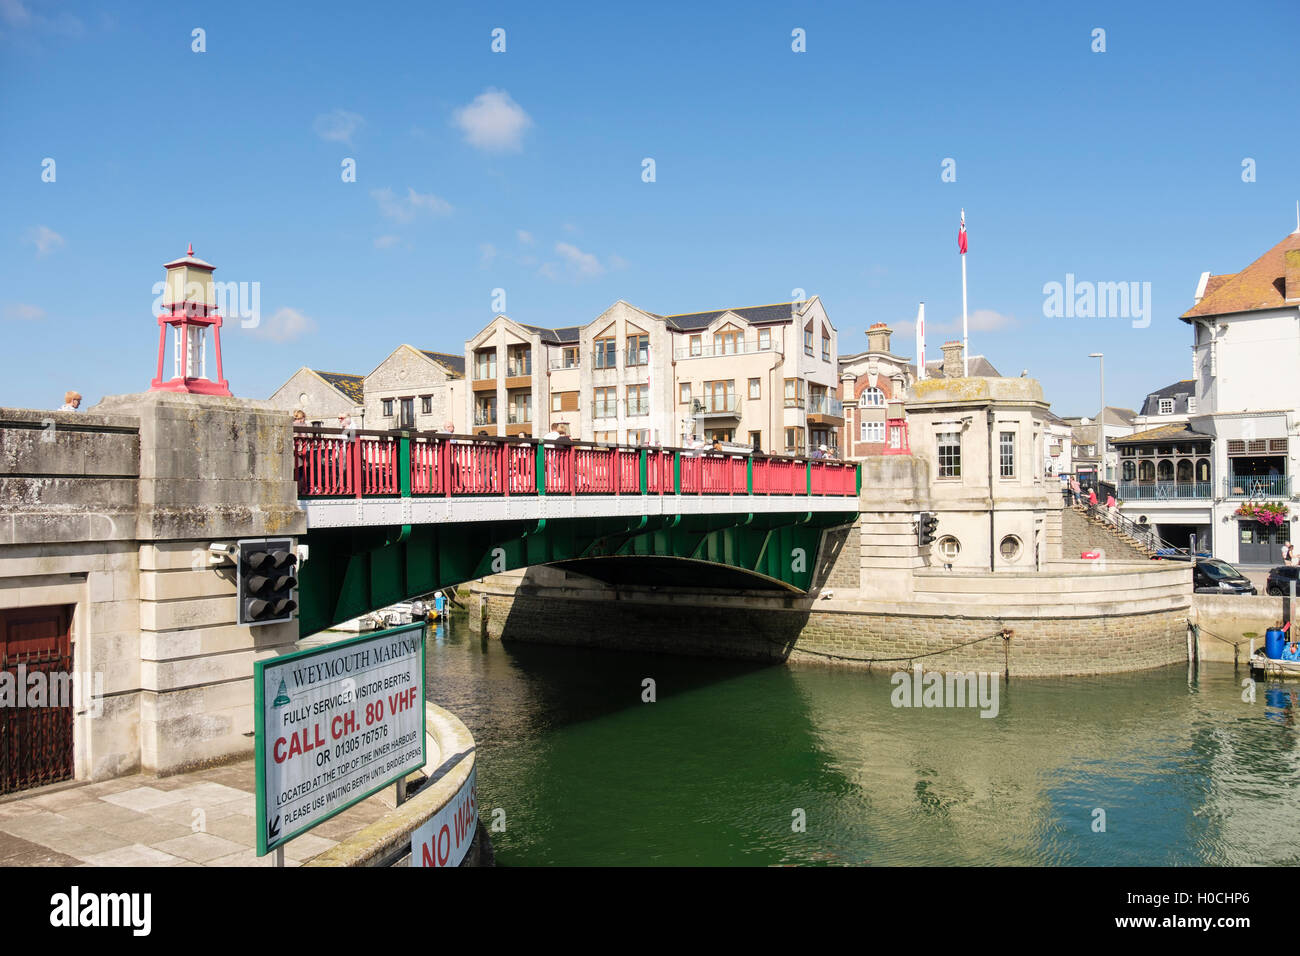 Stadt-Brücke ist eine anhebende Straßenbrücke überquert den Fluss Wey-Hafen. Weymouth, Dorset, England, Vereinigtes Königreich, Großbritannien Stockfoto